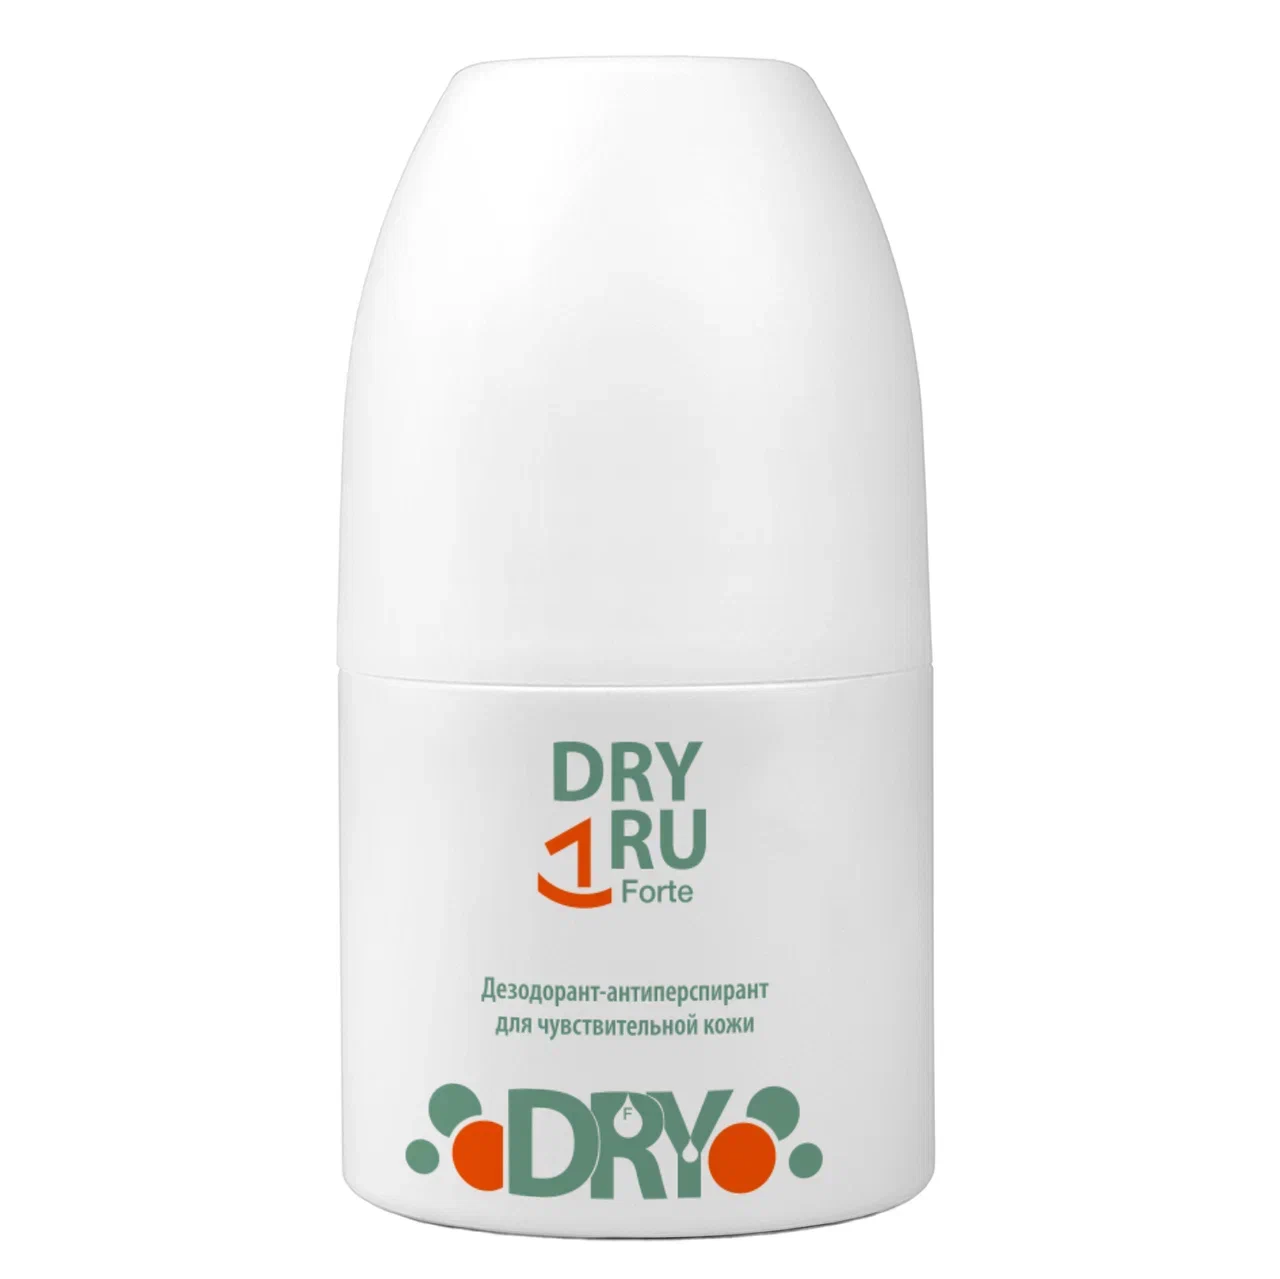 Дезодоран-антиперспирантт DRY RU Forte мужской, шариковый, от пота и запаха 50 мл дабоматик спиртовой от обильного потоотделения vitateka dry extra forte 30% 50 мл